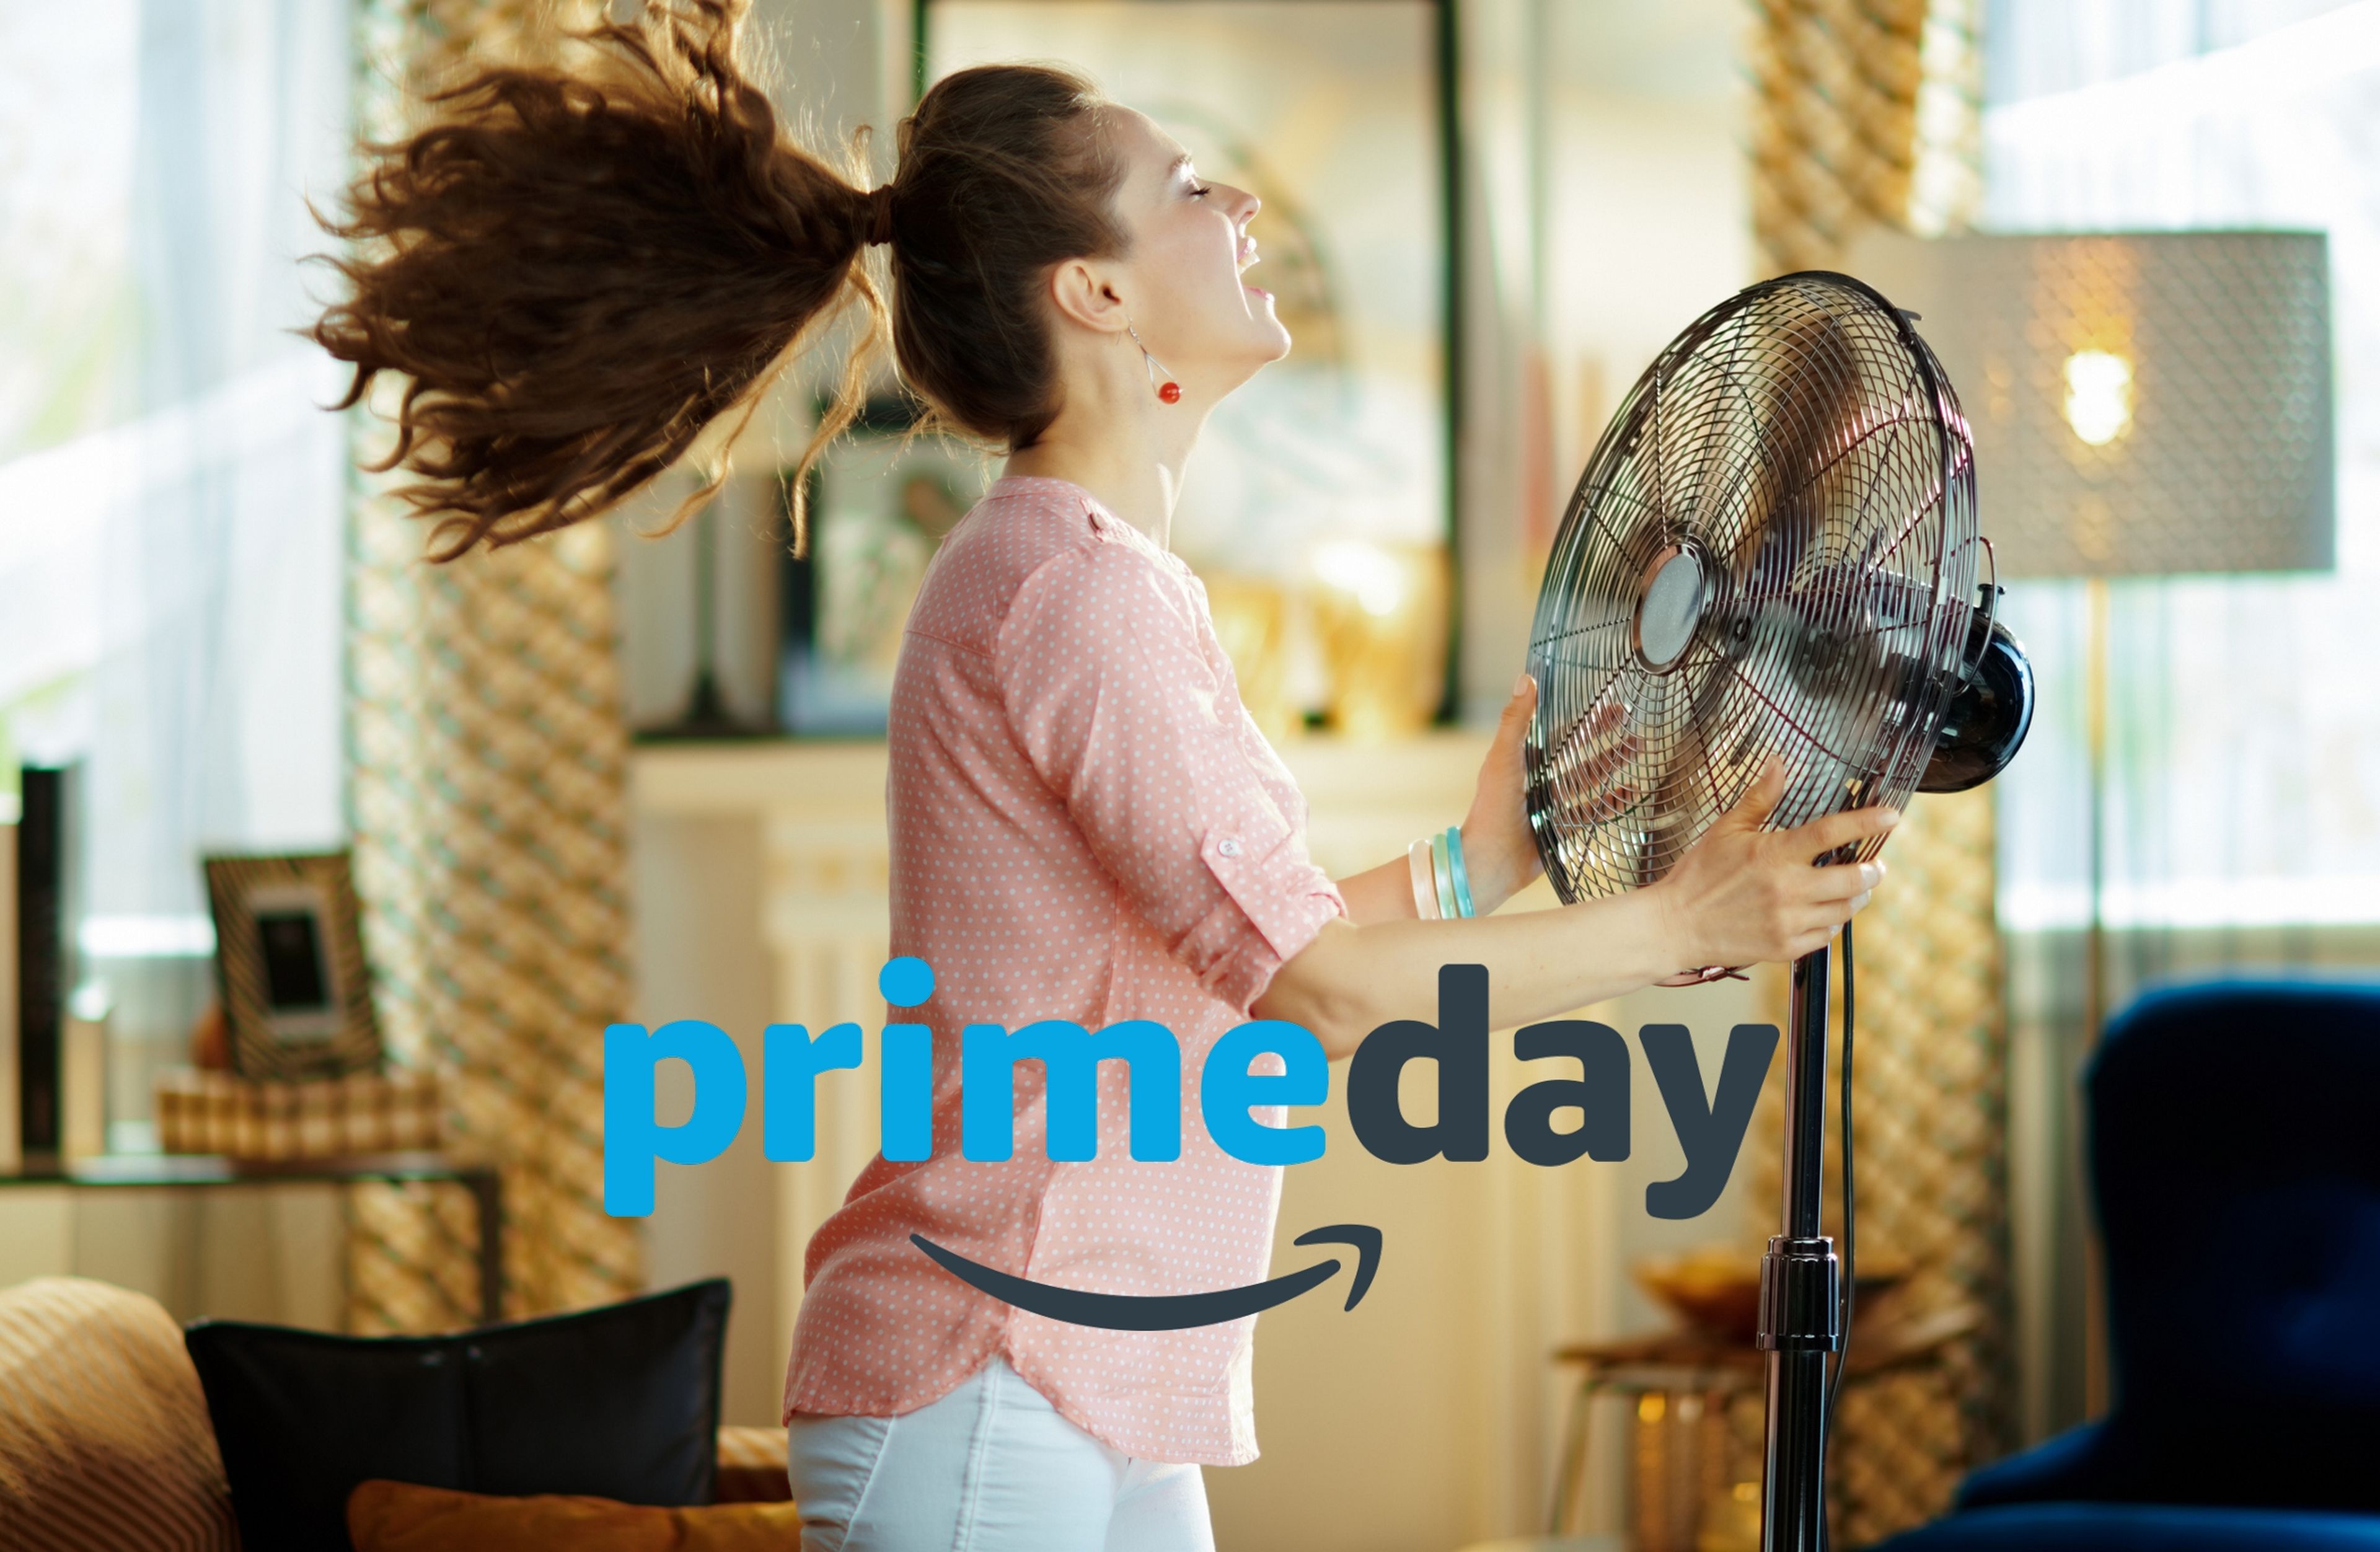 Ventiladores baratos para el verano en oferta por el Amazon Prime Day 2022